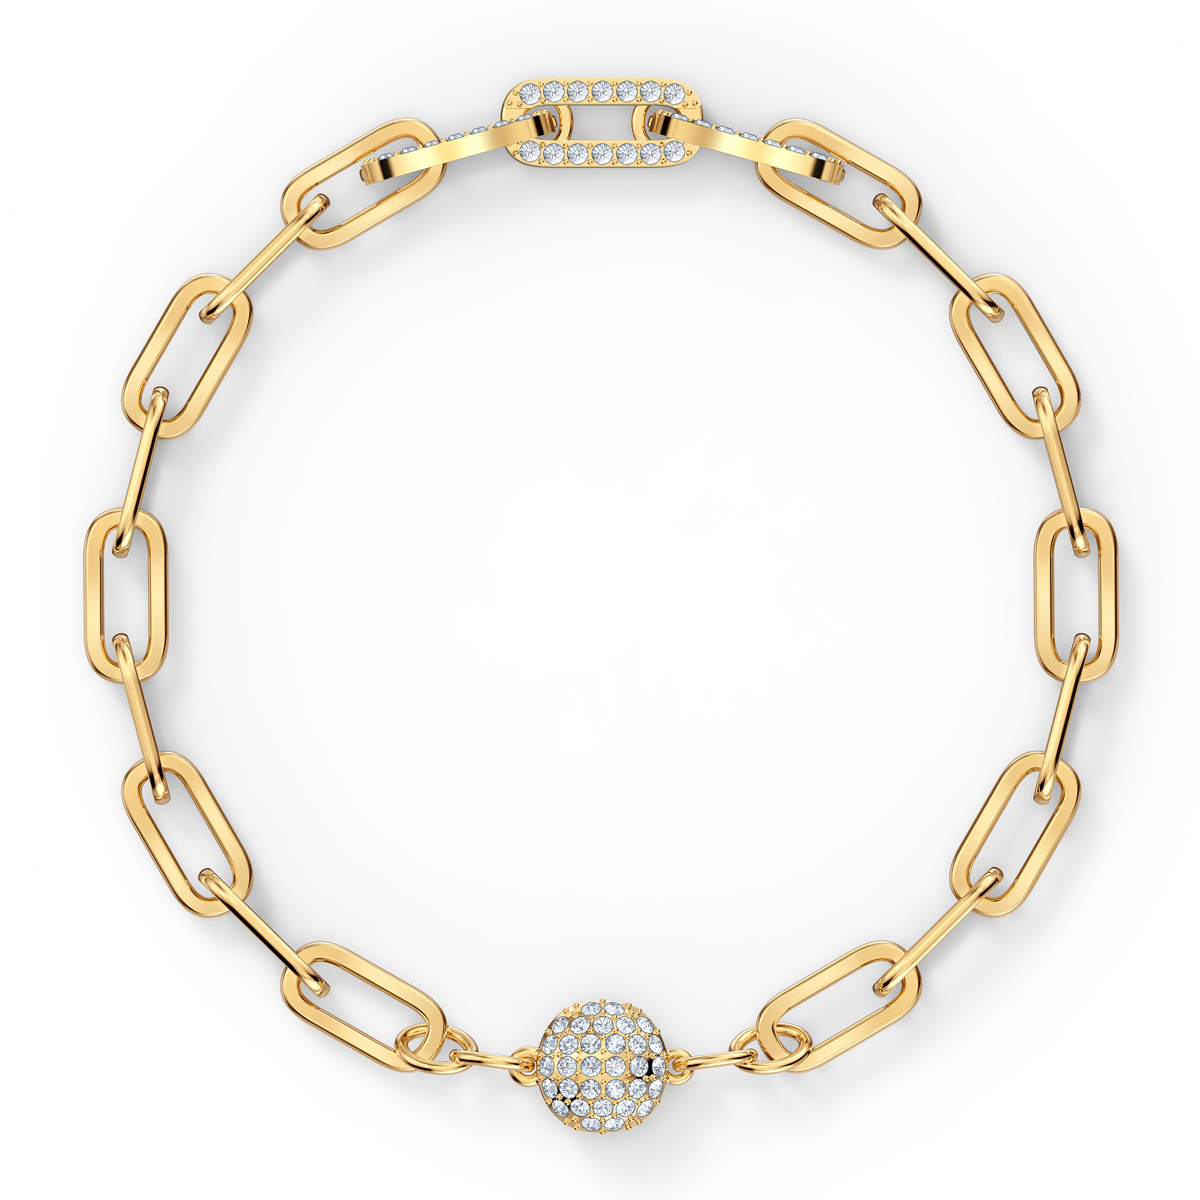 Swarovski The Elements Chain Bracelet, White, Gold Tone Plated